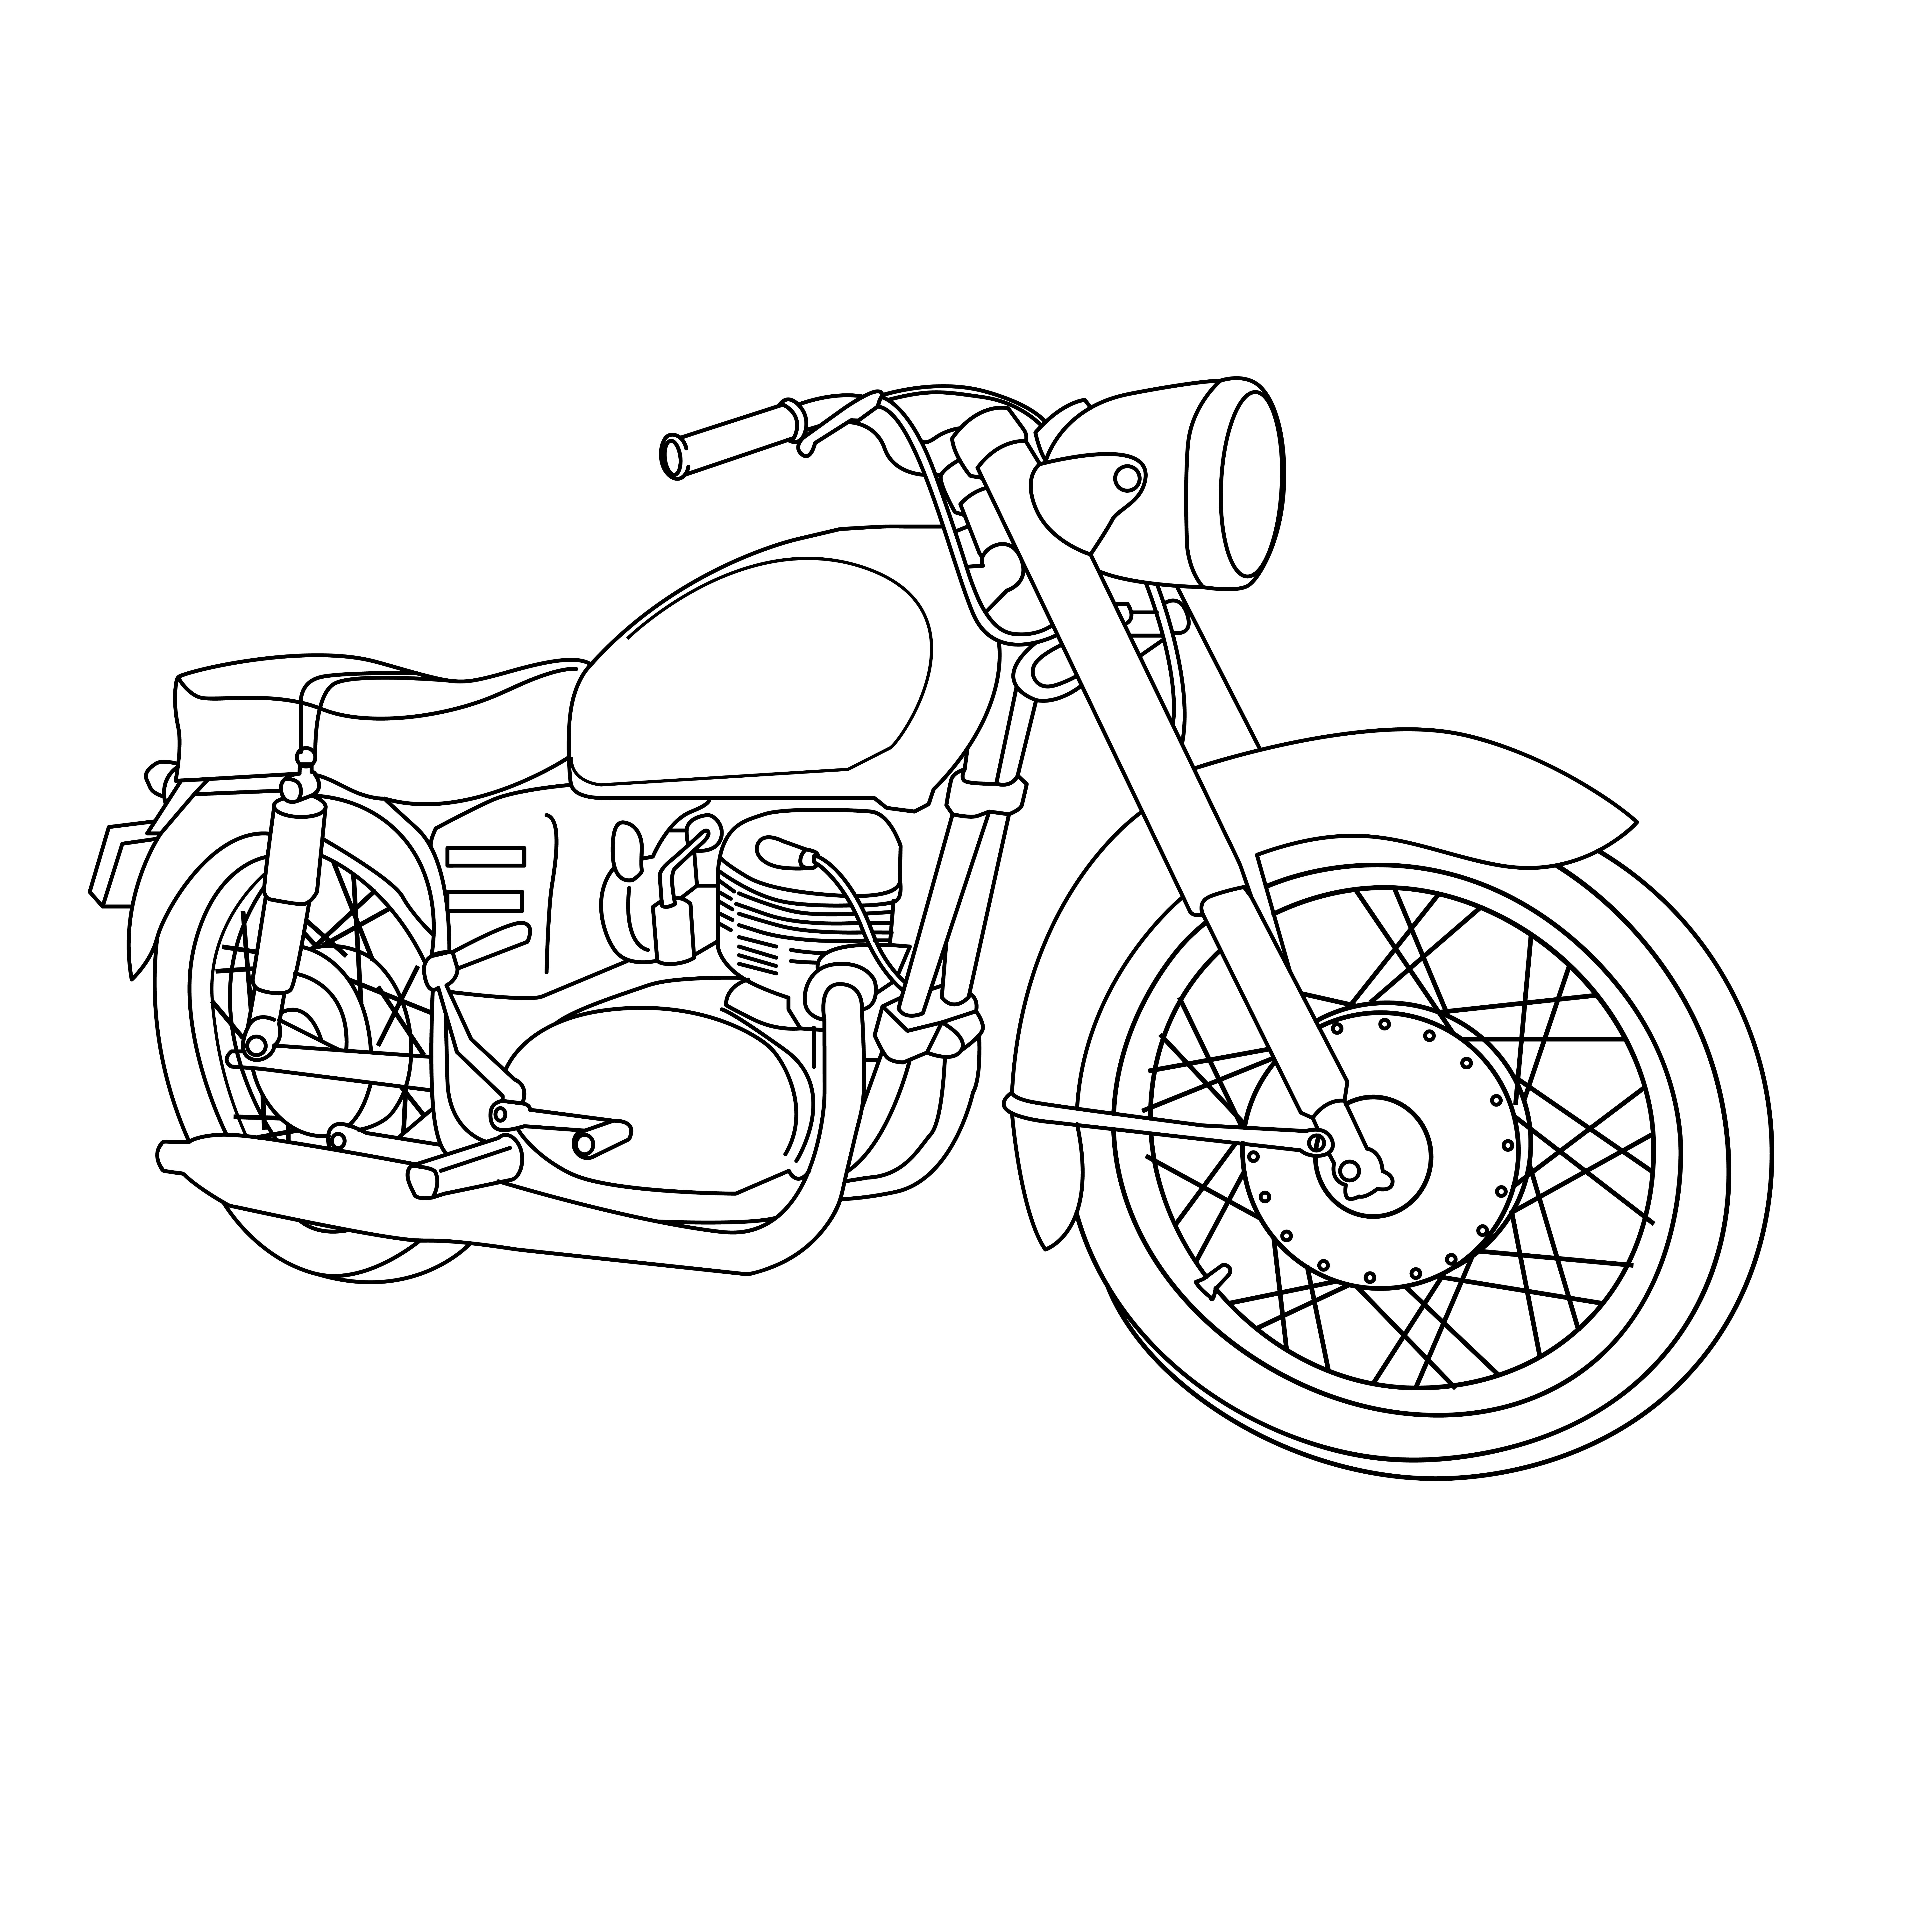 Раскраска мотоцикл «Урал» формата А4 в высоком качестве